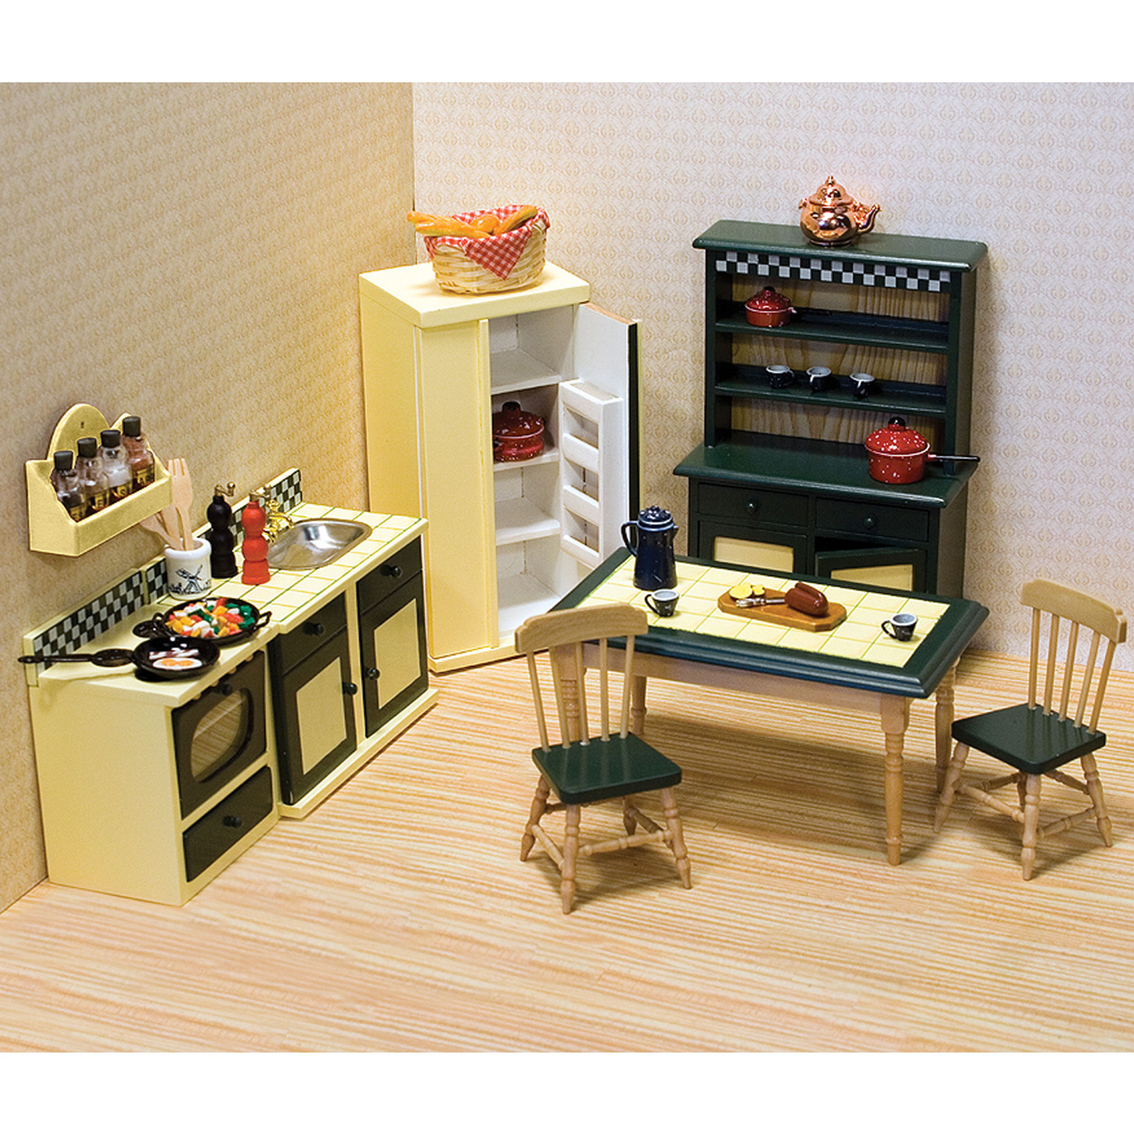 Melissa Doug 7 Pc Dollhouse Kitchen Furniture Dollhouses Baby 